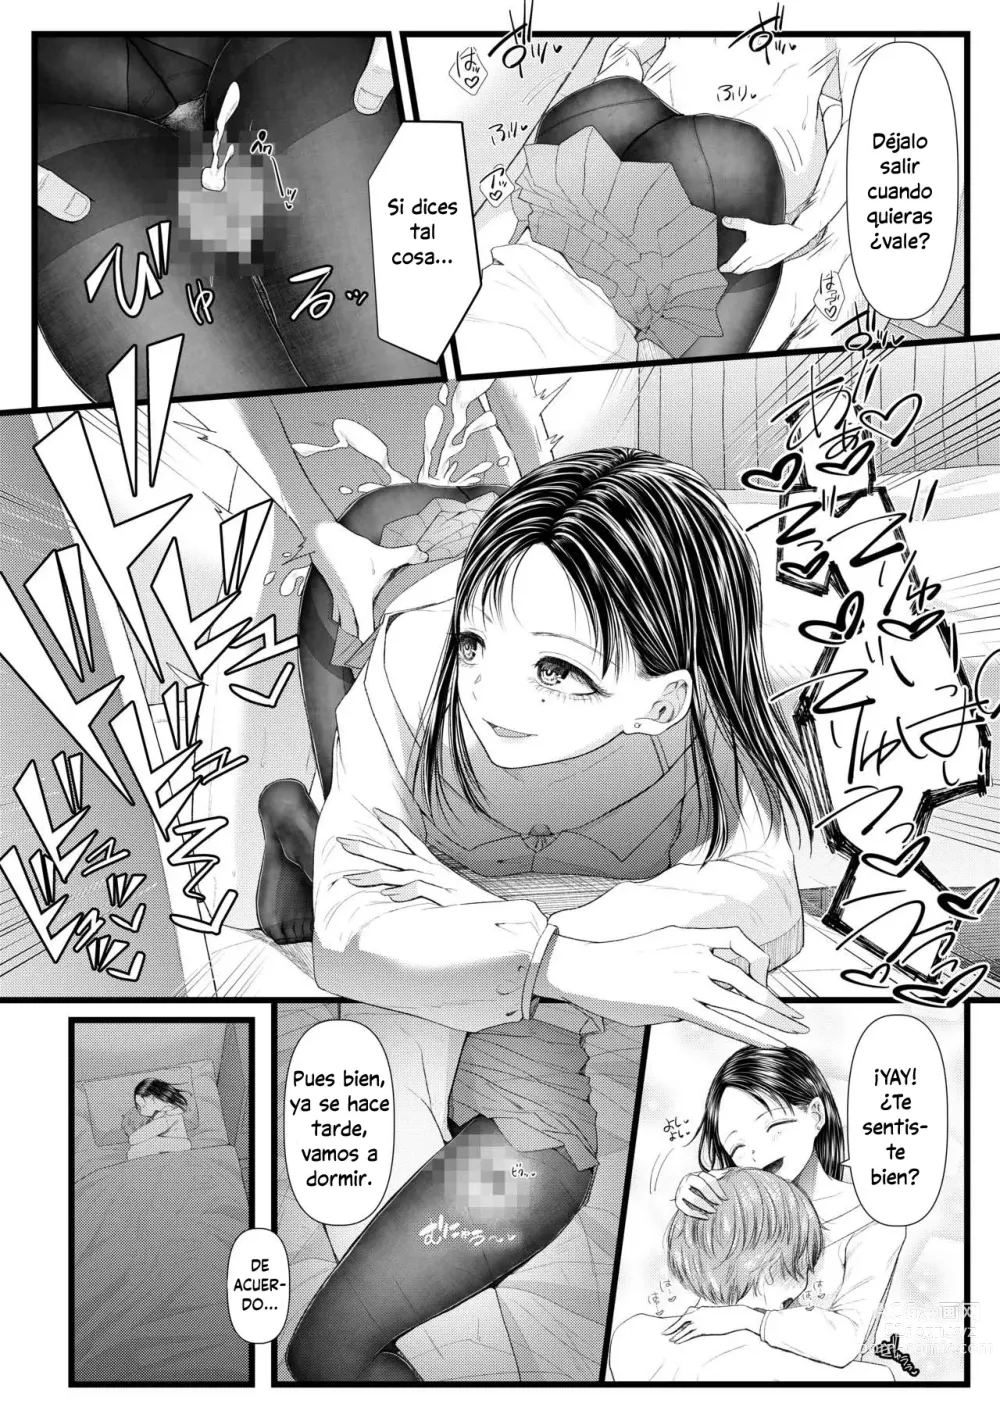 Page 8 of doujinshi My Boyfriend is a Masochist: Leg Fetish, Birthday Edition